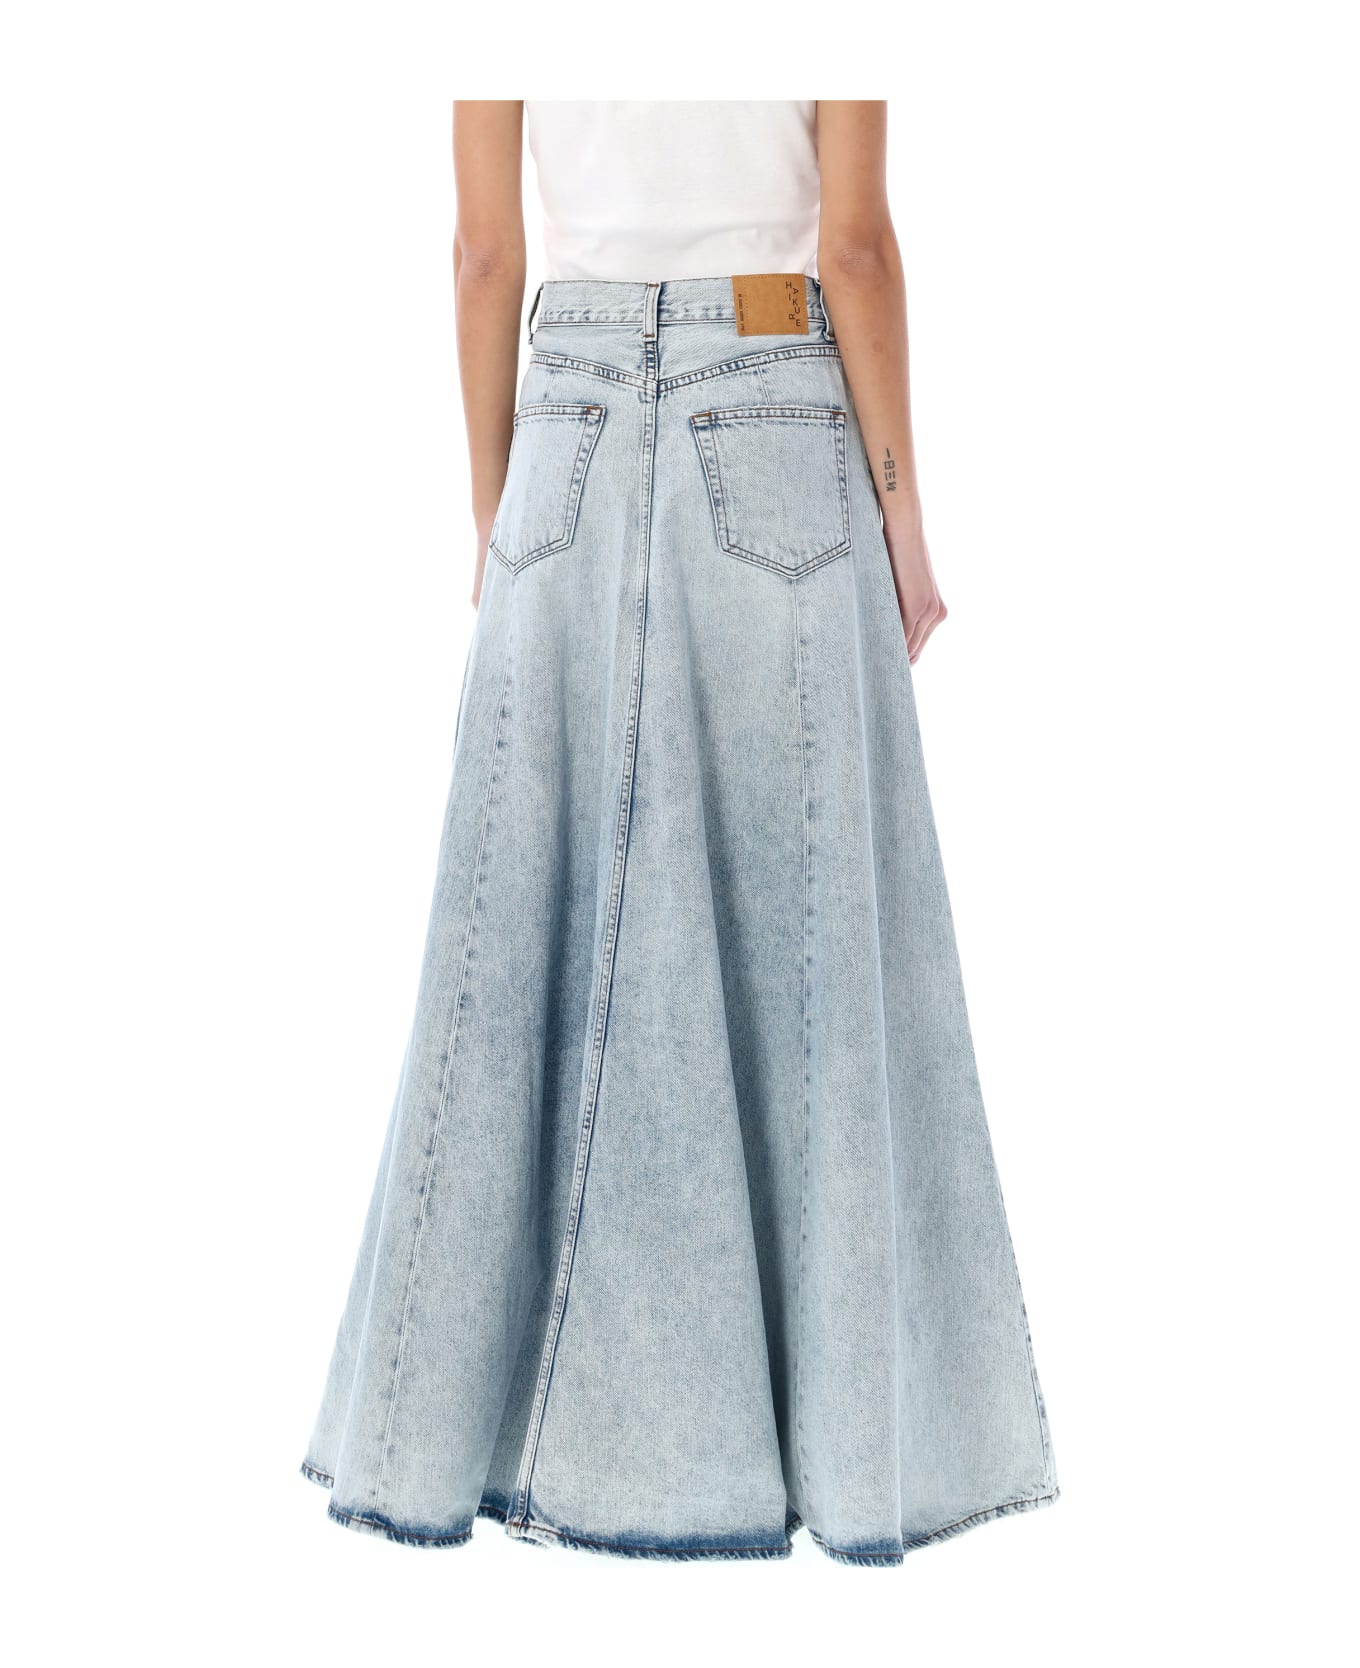 Haikure Serenity Long Skirt - STROMBOLI BLUE